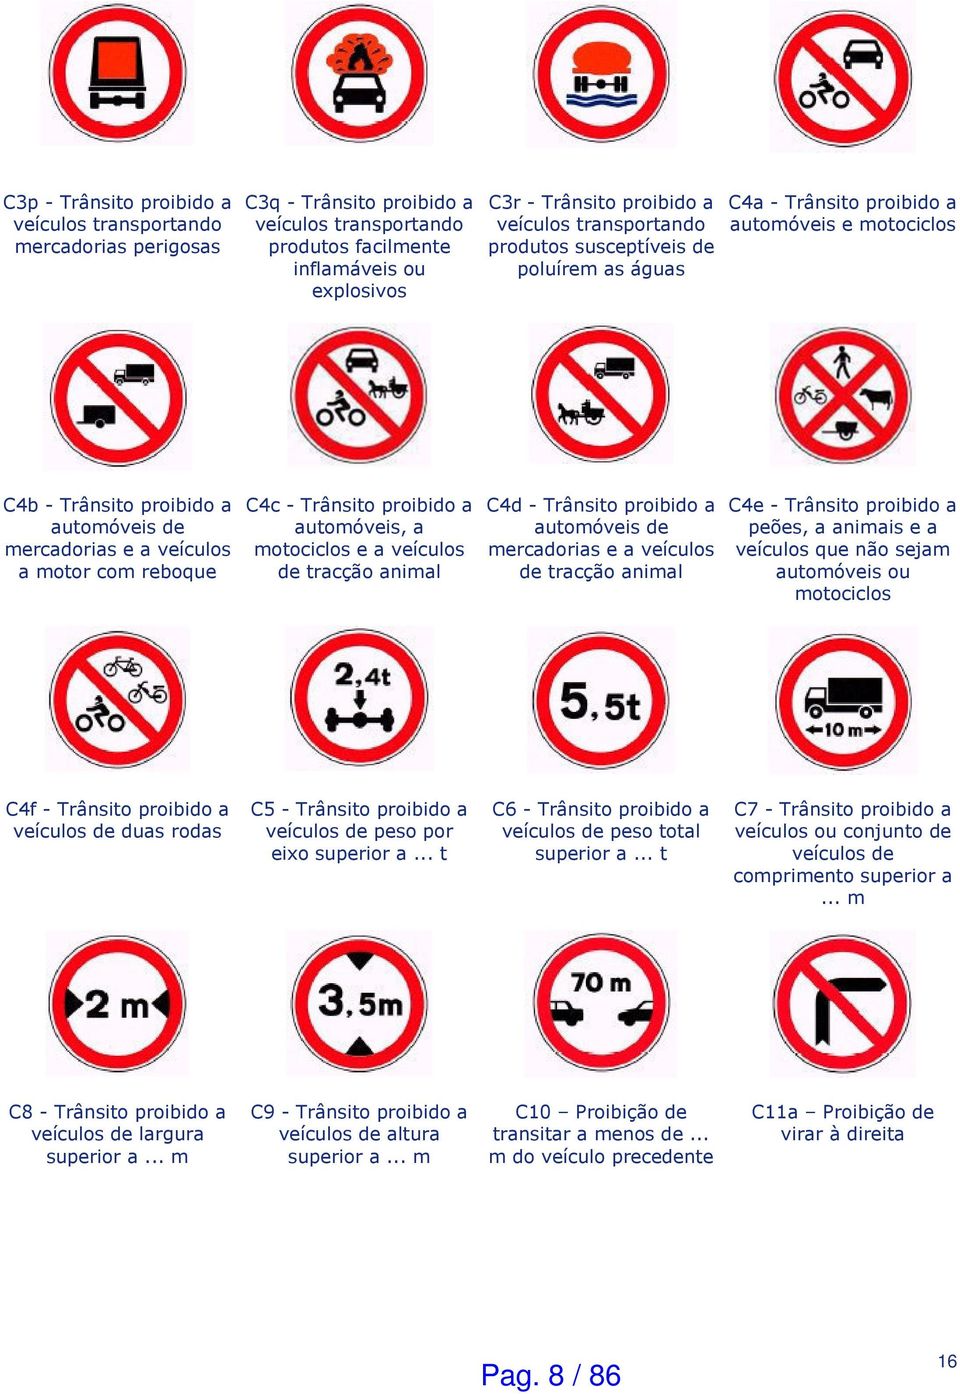 reboque C4c - Trânsito proibido a automóveis, a motociclos e a veículos de tracção animal C4d - Trânsito proibido a automóveis de mercadorias e a veículos de tracção animal C4e - Trânsito proibido a